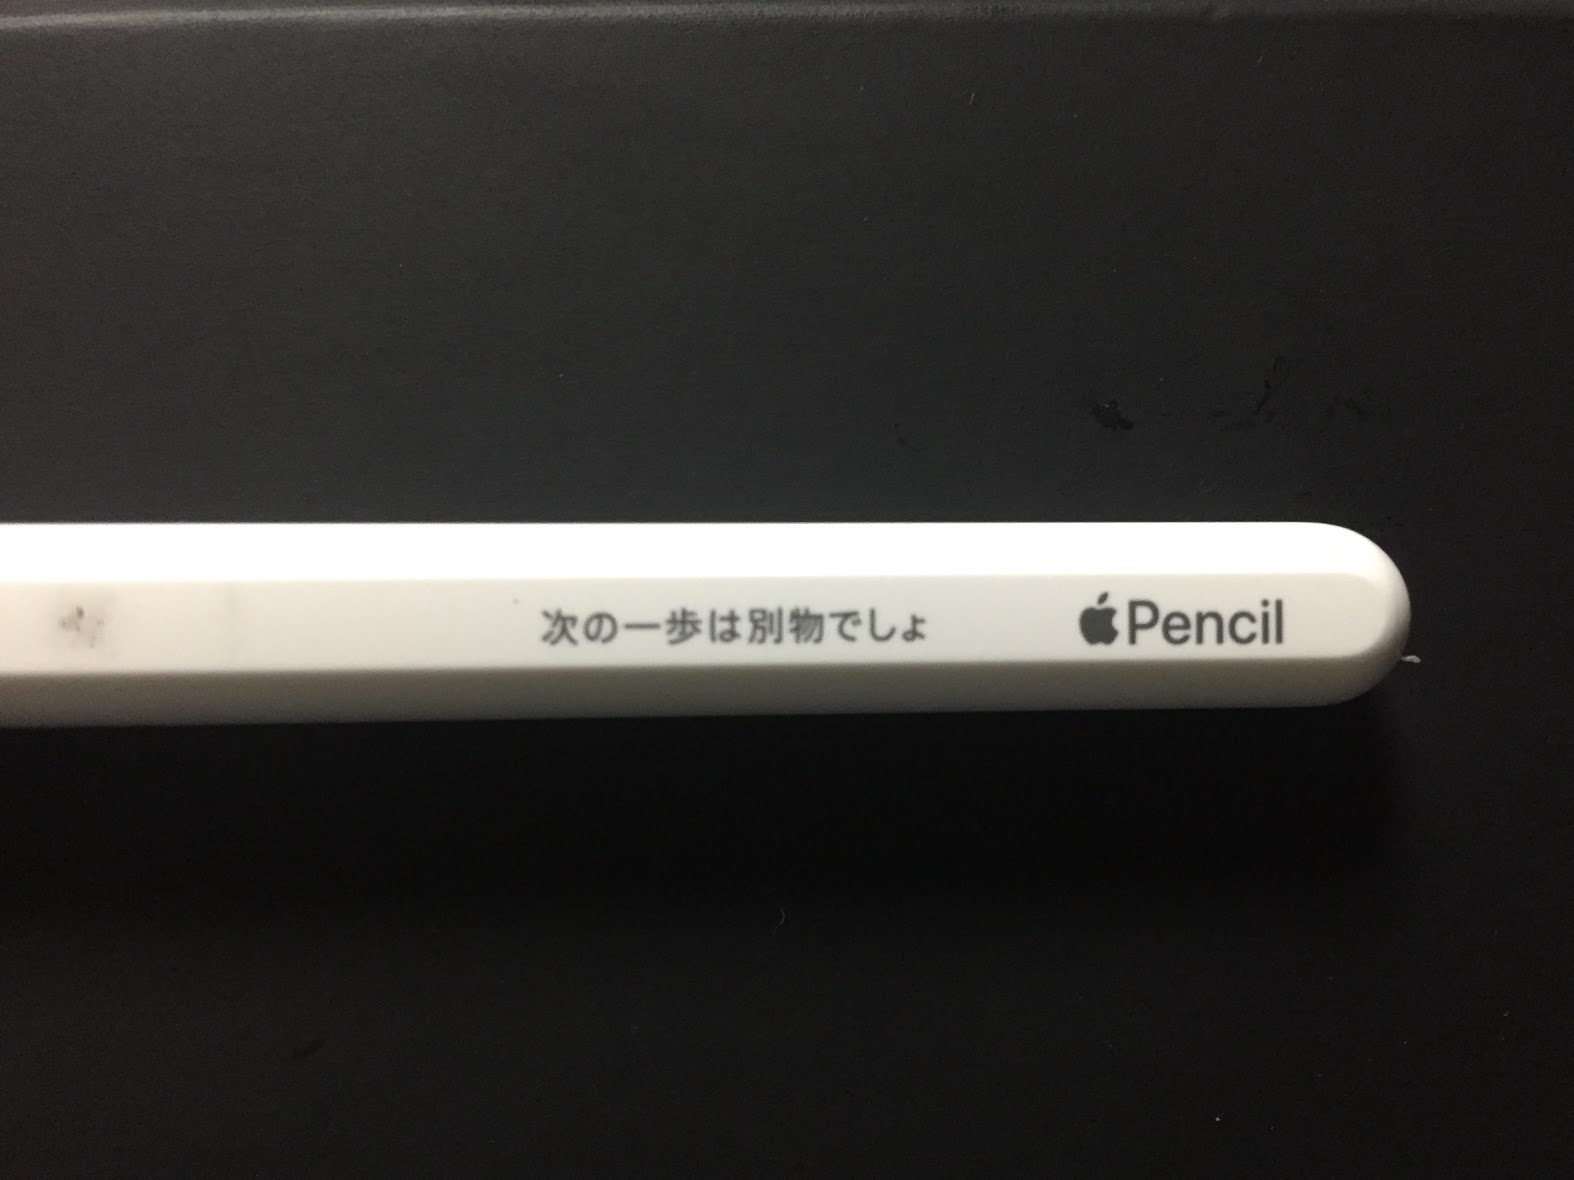 刻印入りApple Pencil（第2世代）